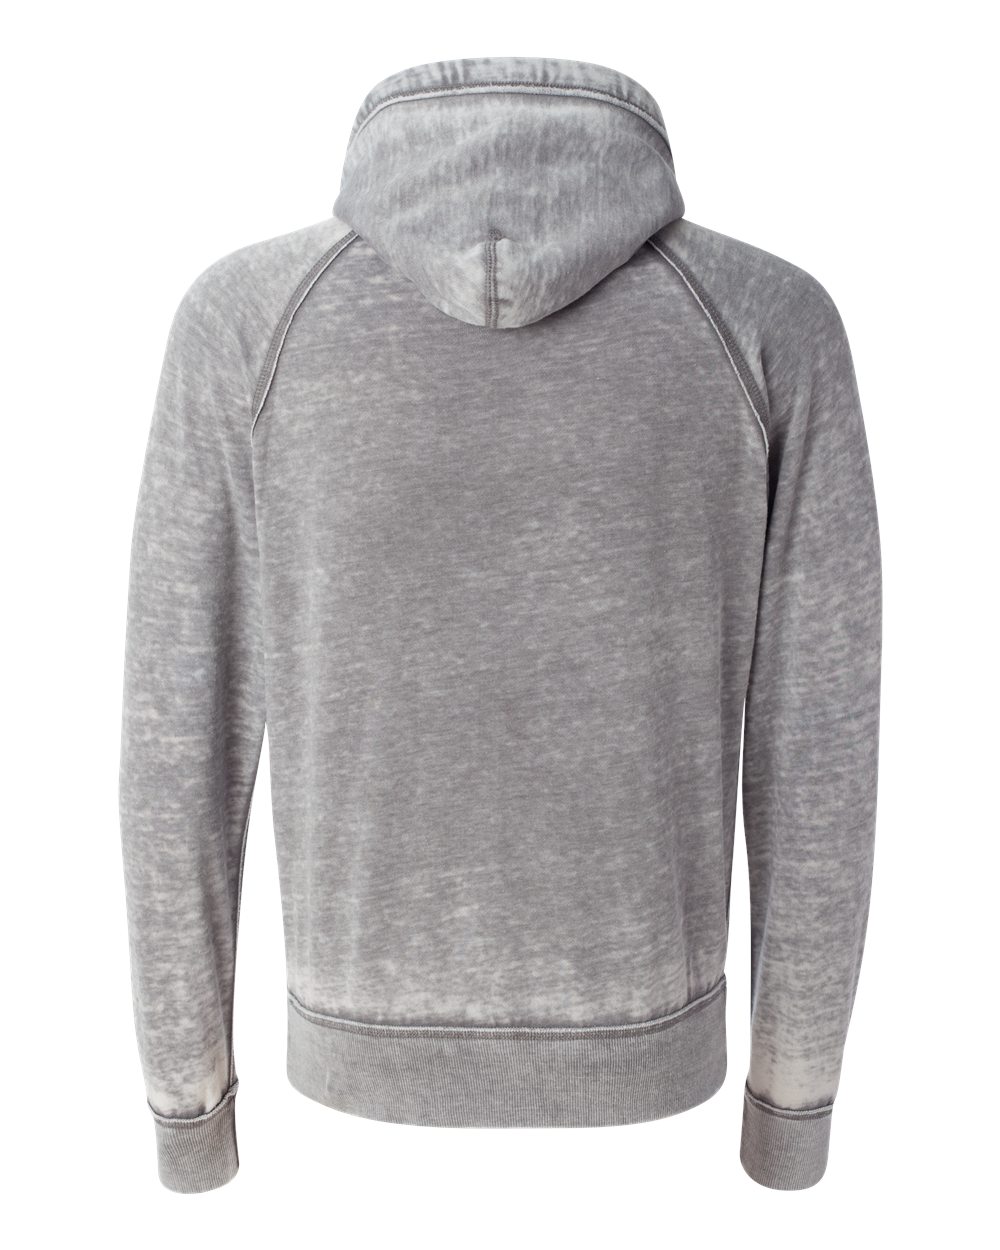 J. America Mens Vintage Zen Fleece Hooded Pullover Sweatshirt 8915 up ...